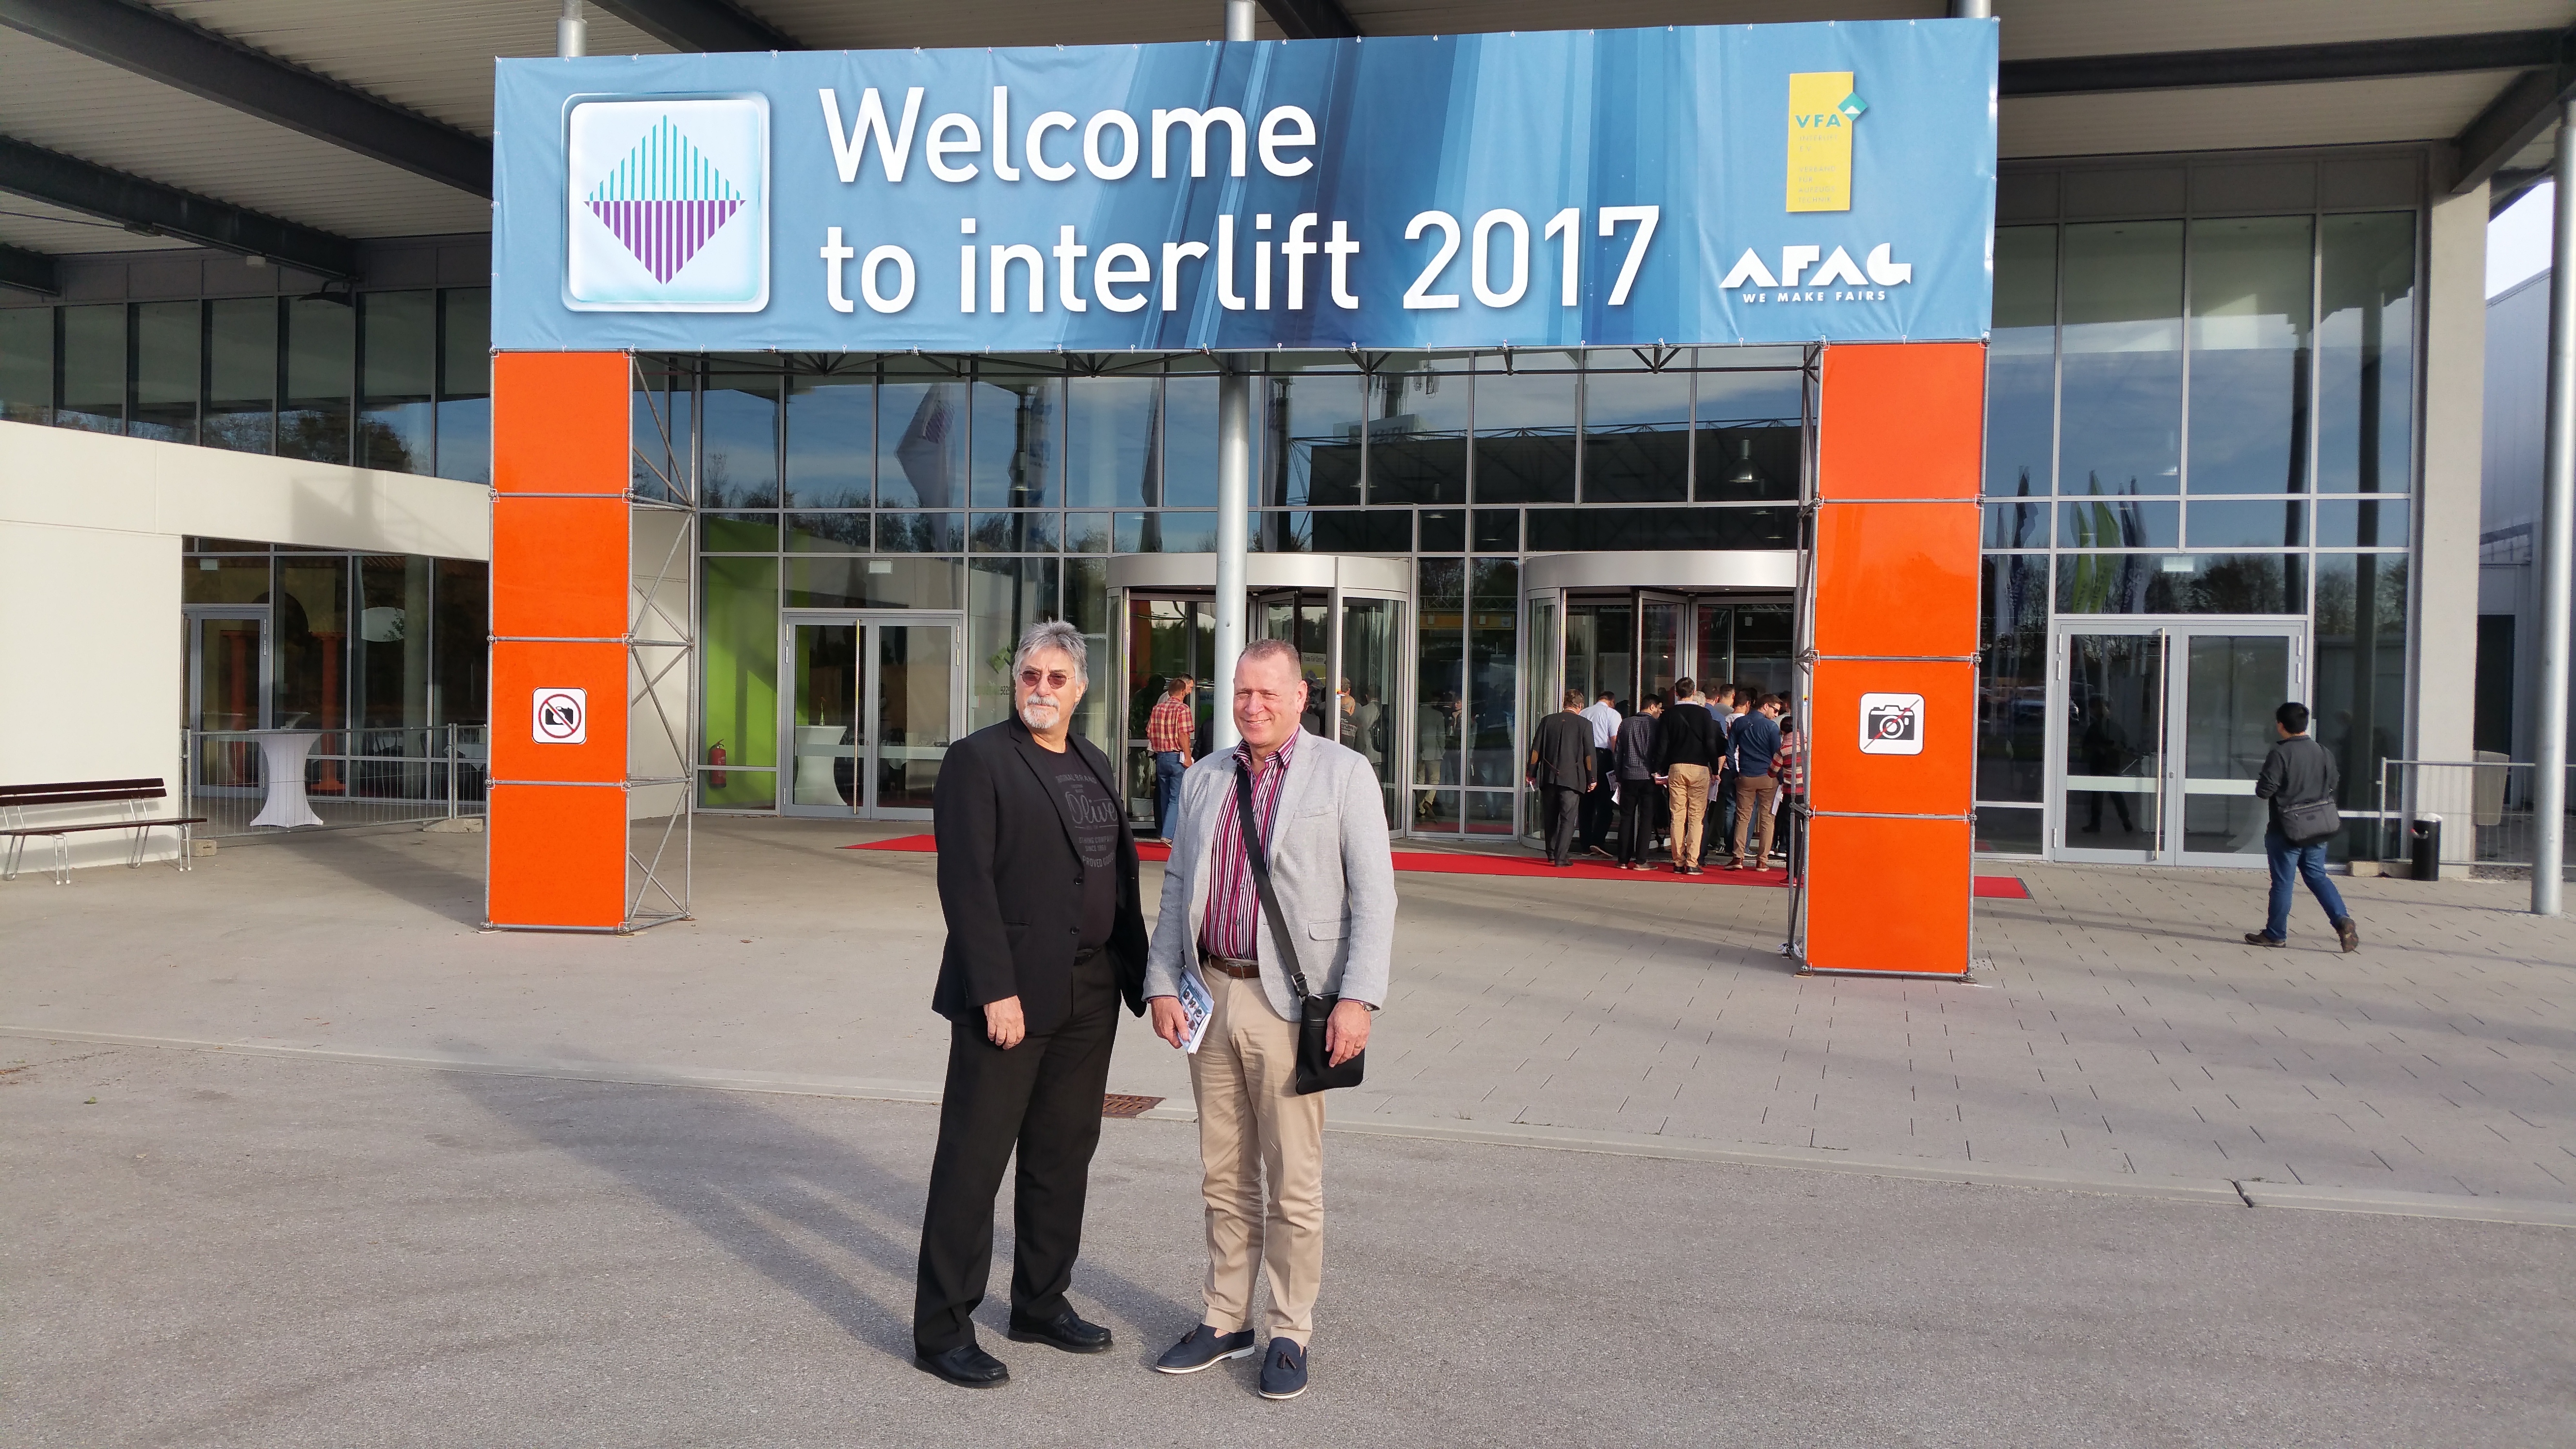 Interlift 2017 in Augsburg